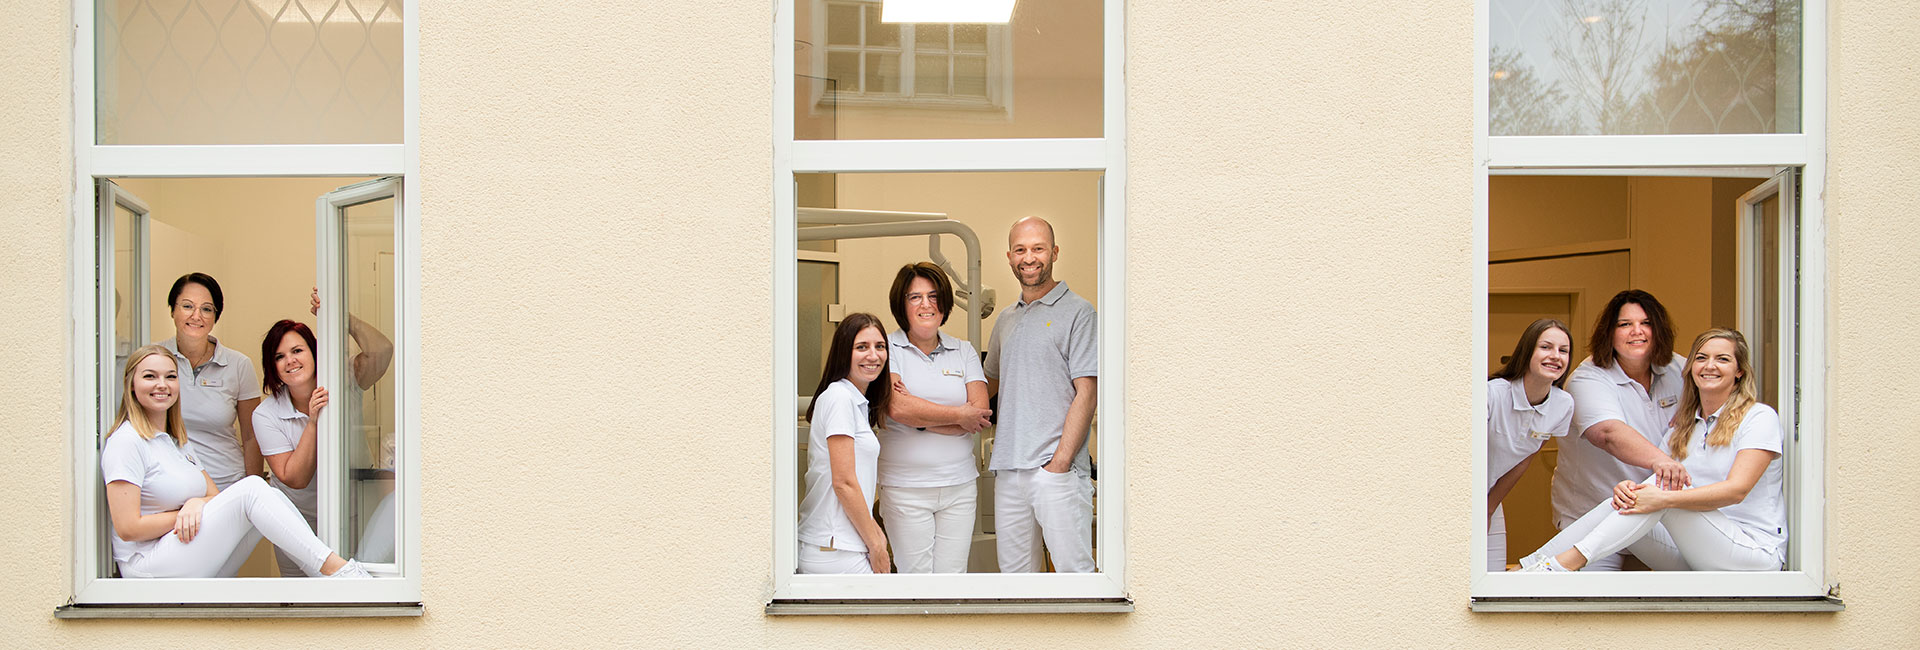 Das Team der Zahnarztpraxis Dr. Krinner in Straubing